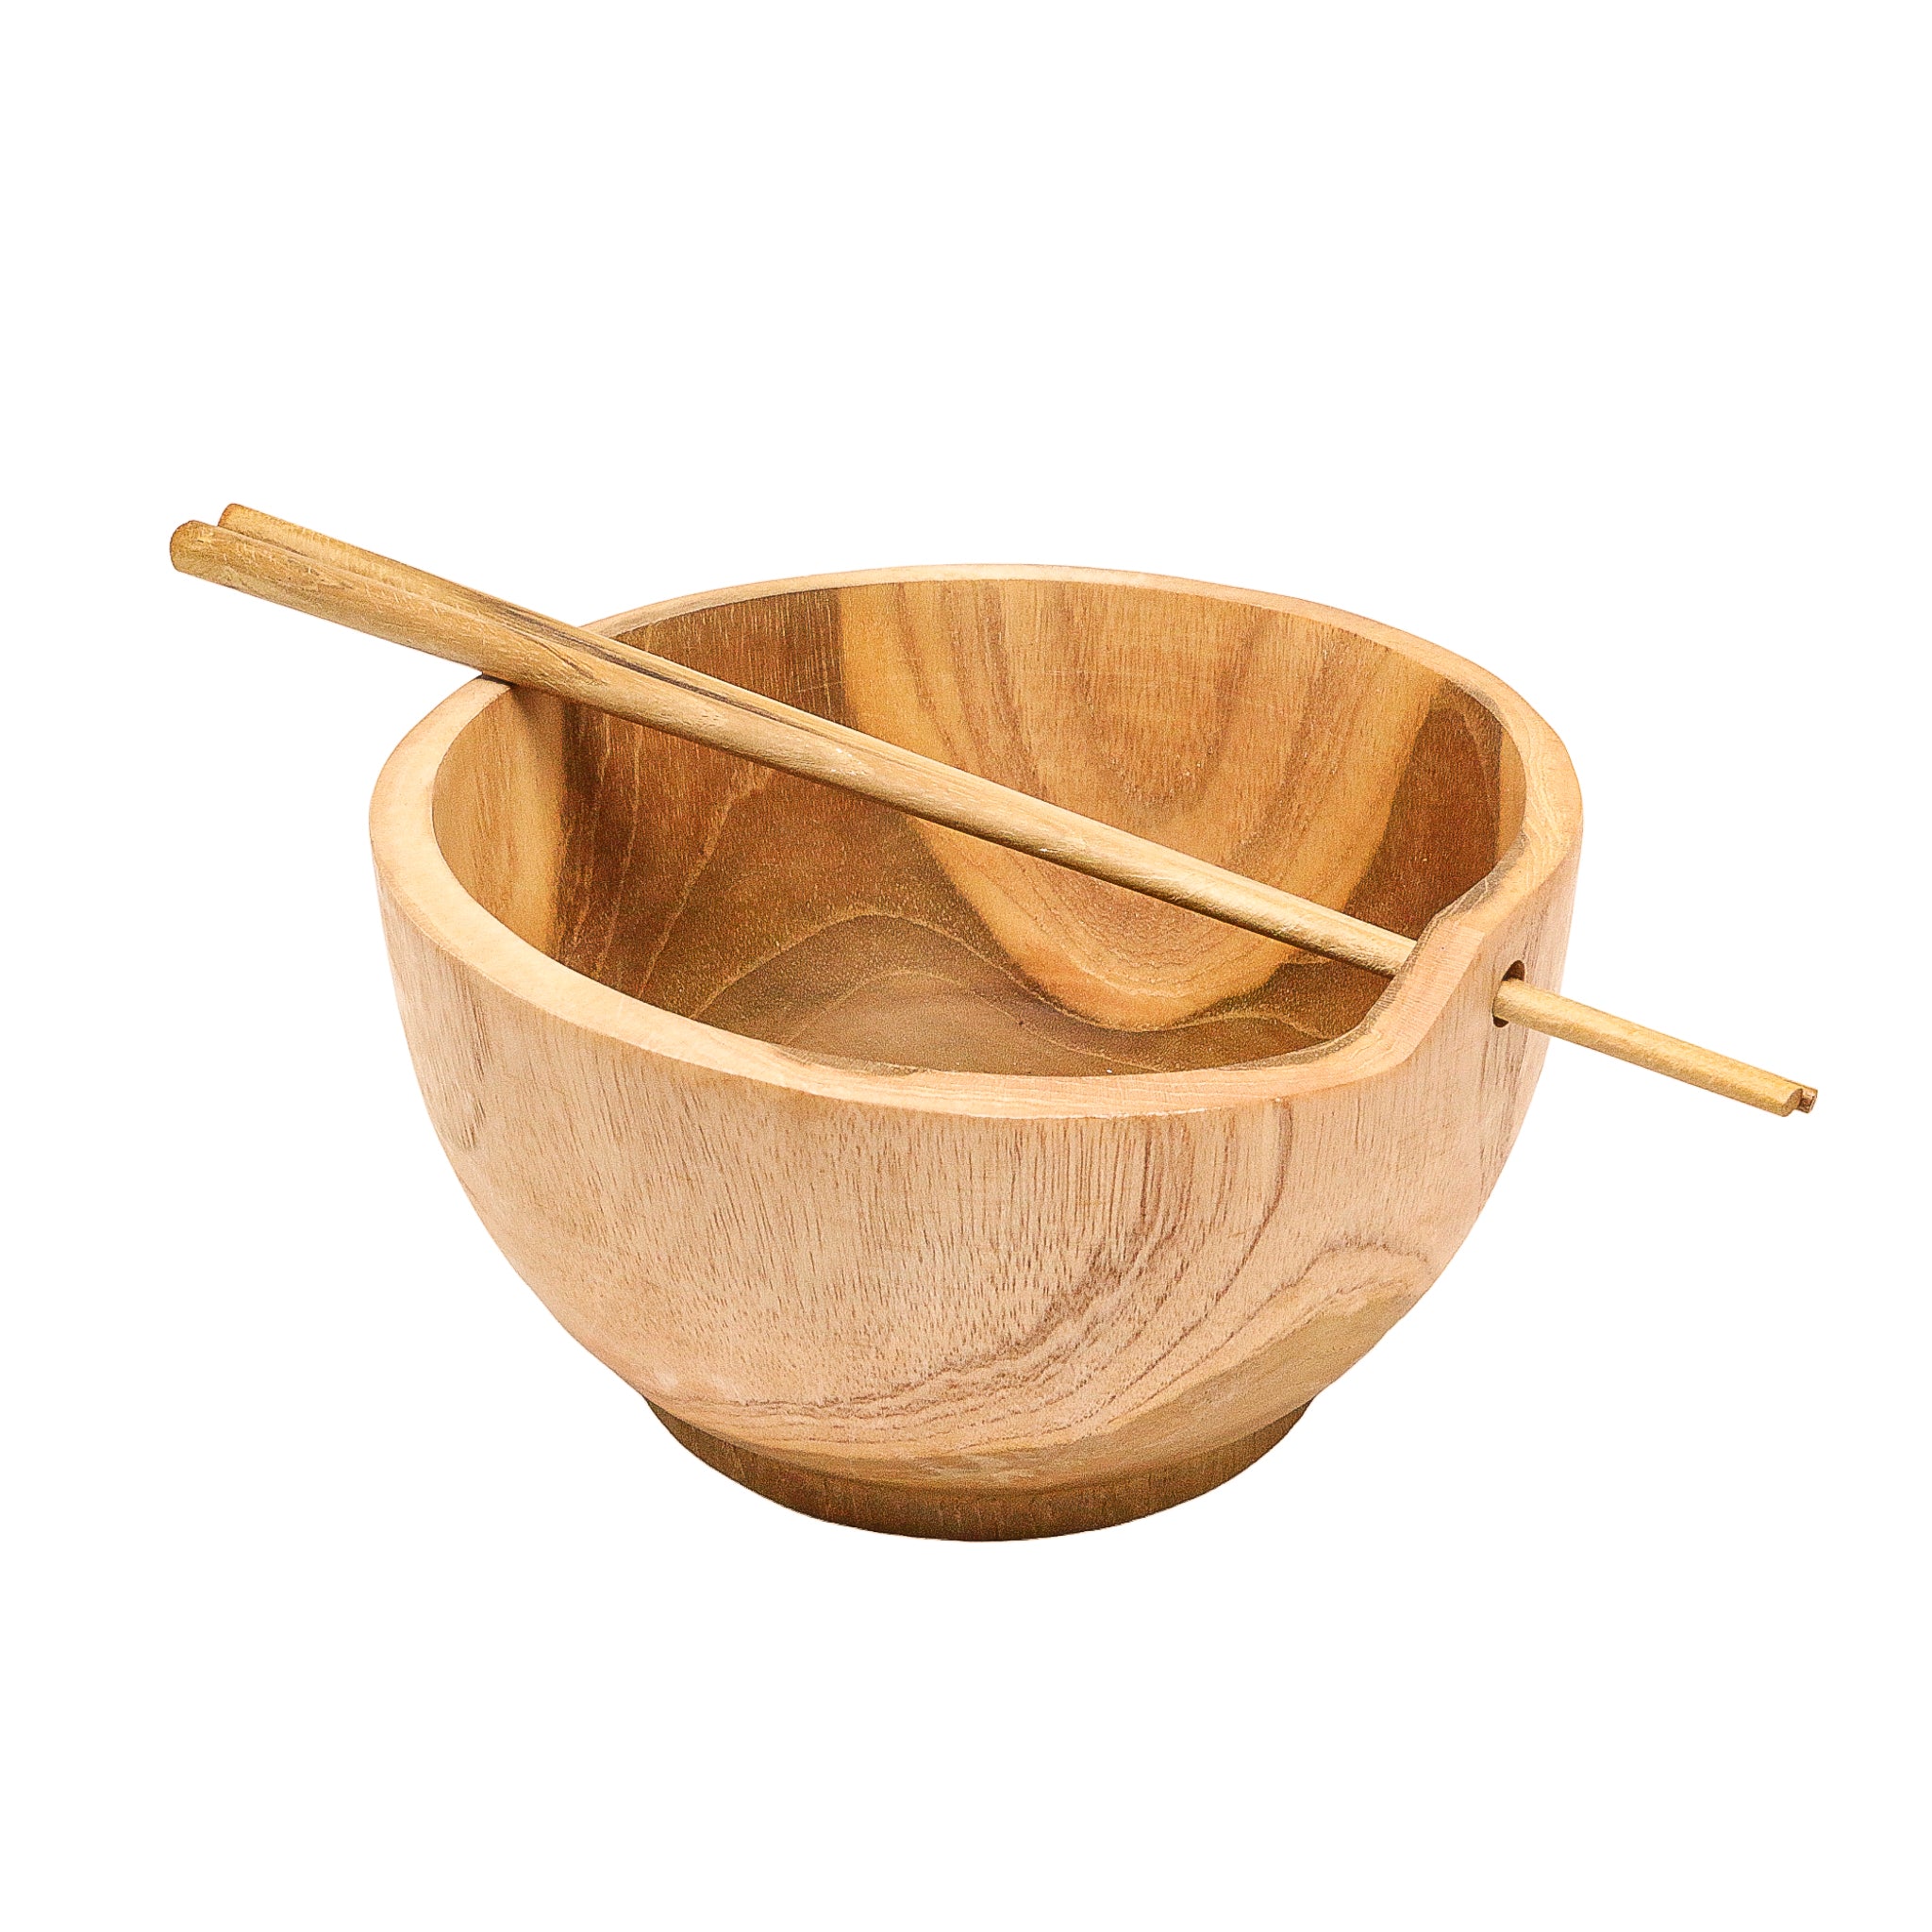 Ramen Wooden Teak Bowl with Chopsticks